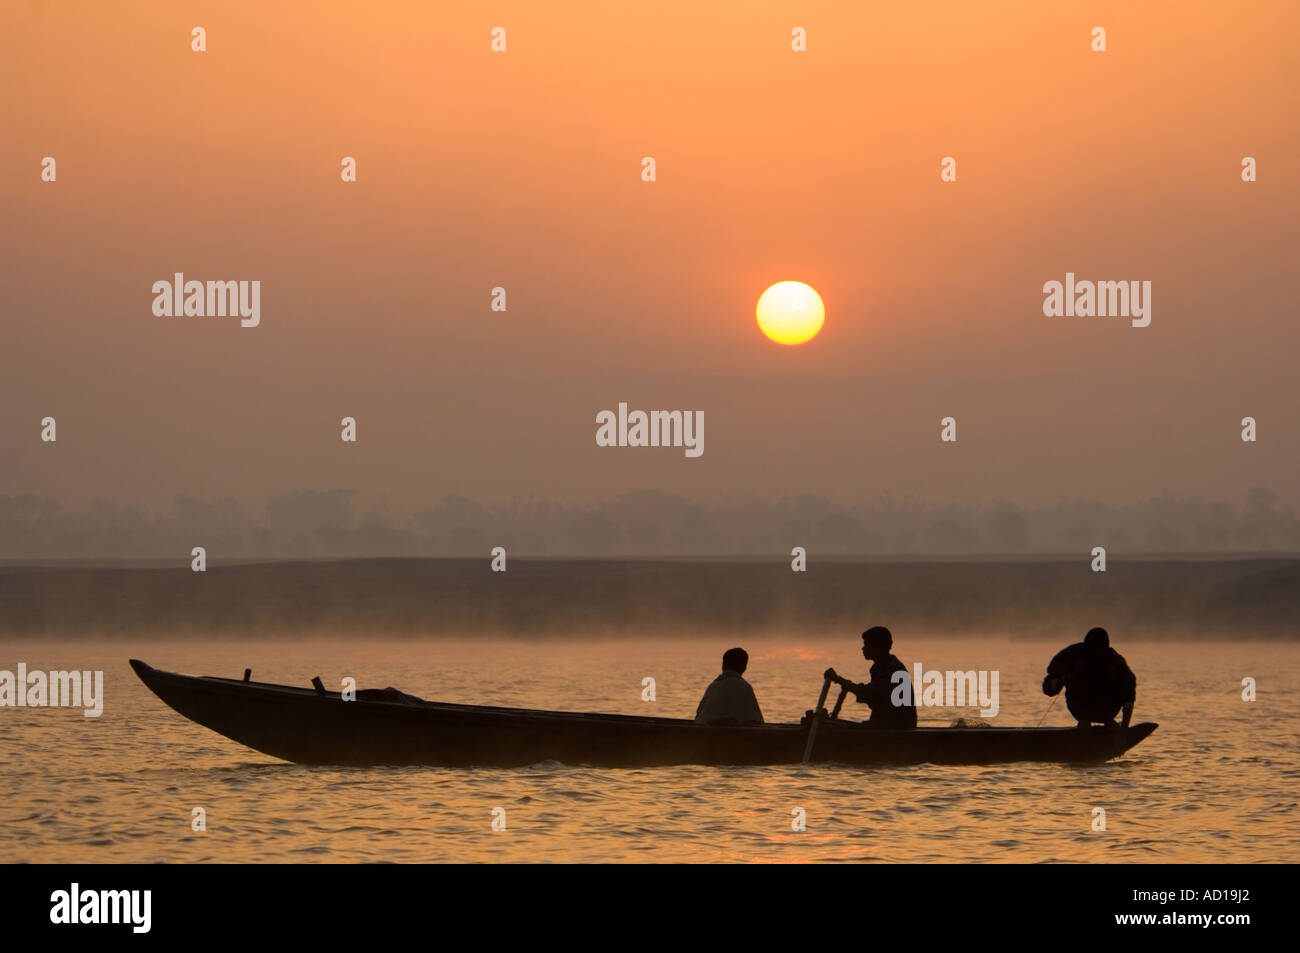 Sonnenaufgang über dem Fluss Ganges (Ganga) mit einheimischen Männer Angeln und Silhouette gegen die aufgehende Sonne. Stockfoto